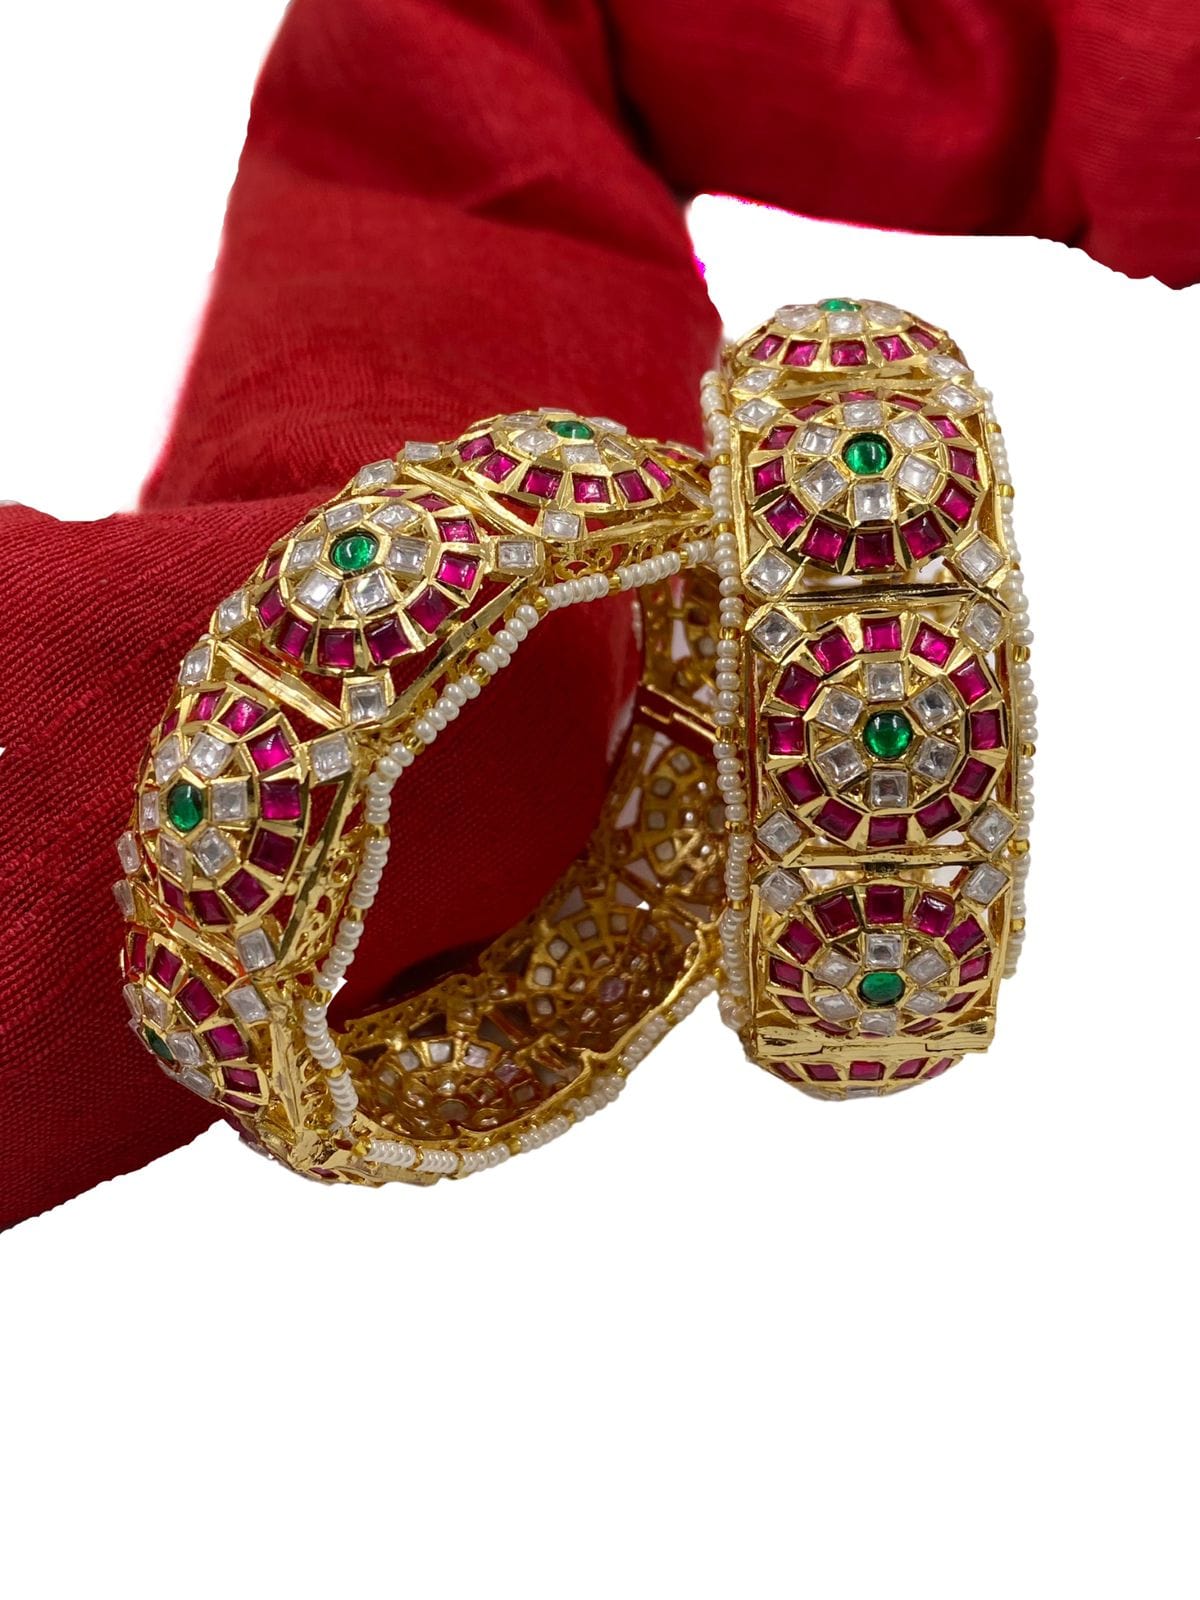 Designer Multi Color Jadau Kundan Bangles For Women Antique Golden Bangles